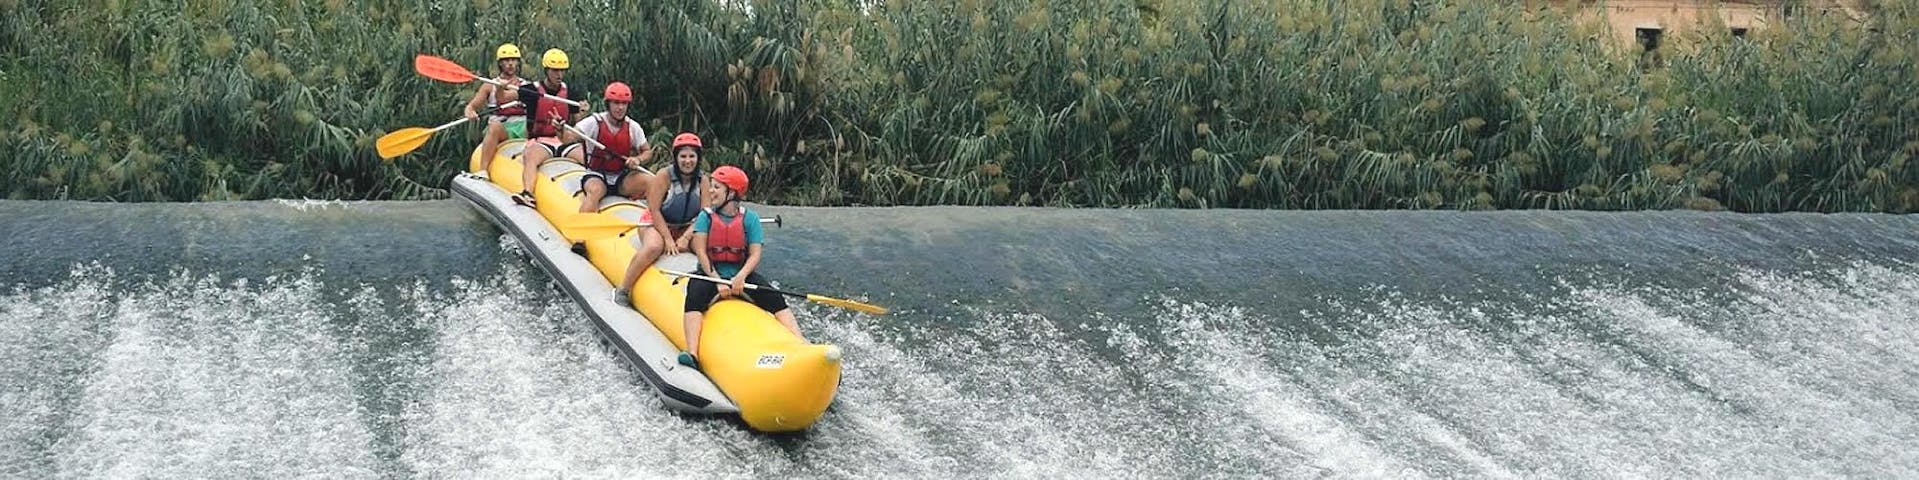 Rafting de descenso en banana en el Río Segura .